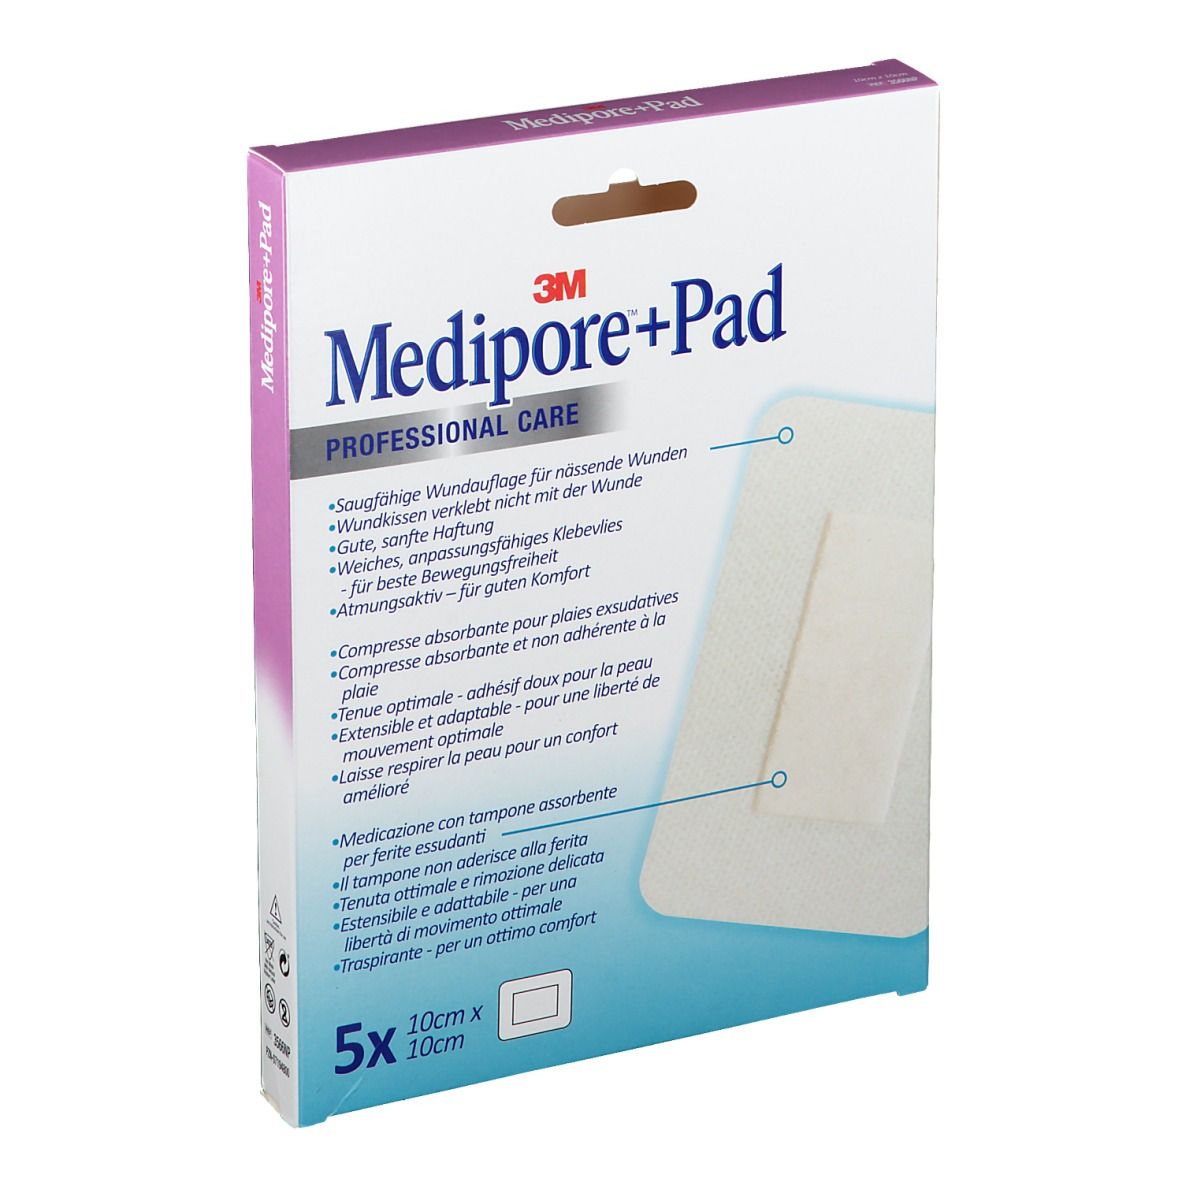 3M Medipore + Pad Pansement stérile avec compresse 10 x 10 cm